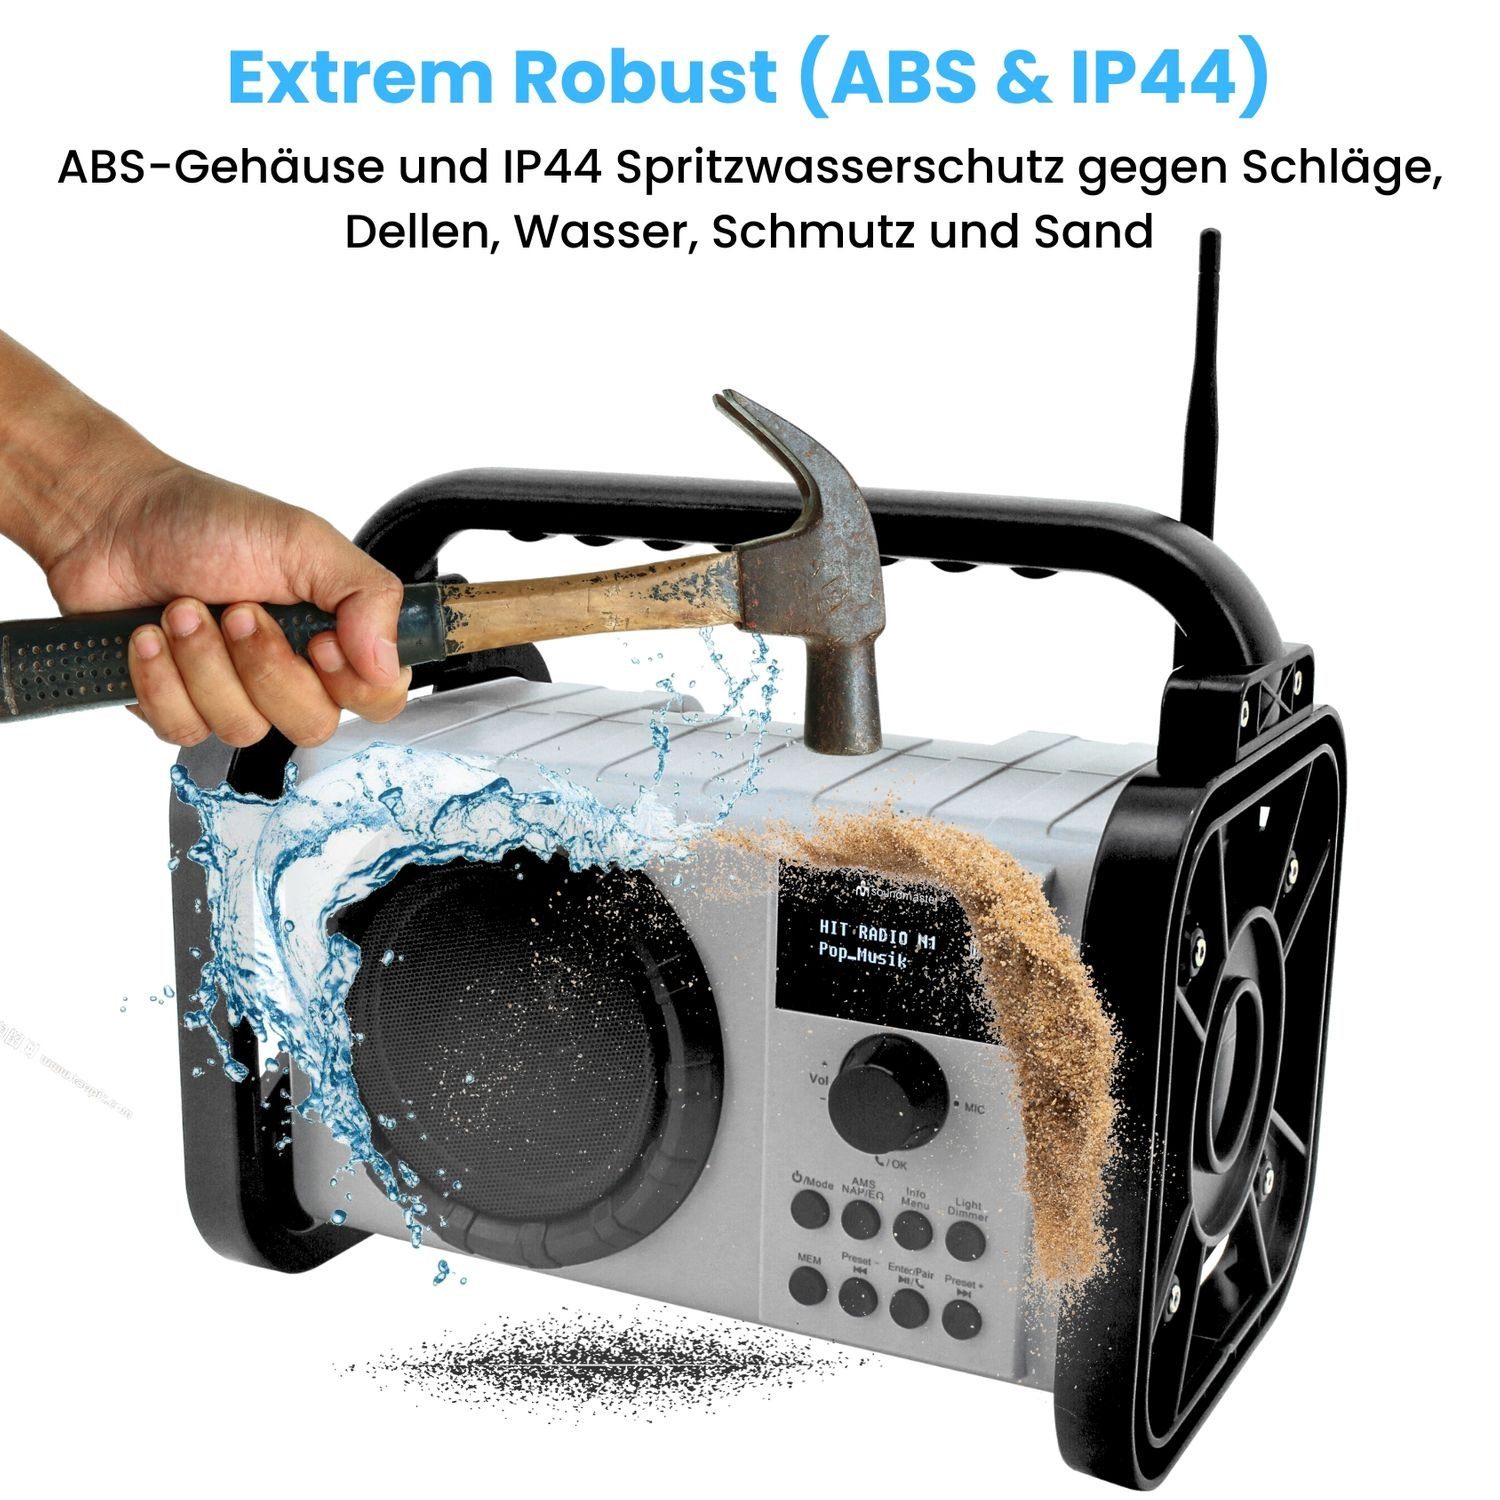 FM, PLL-UKW, (DAB+, Bluetooth IP44 Akku Baustellenradio spritzwassergeschützt Digitalradio MW, DAB80OR (DAB) DAB+ AM) Soundmaster